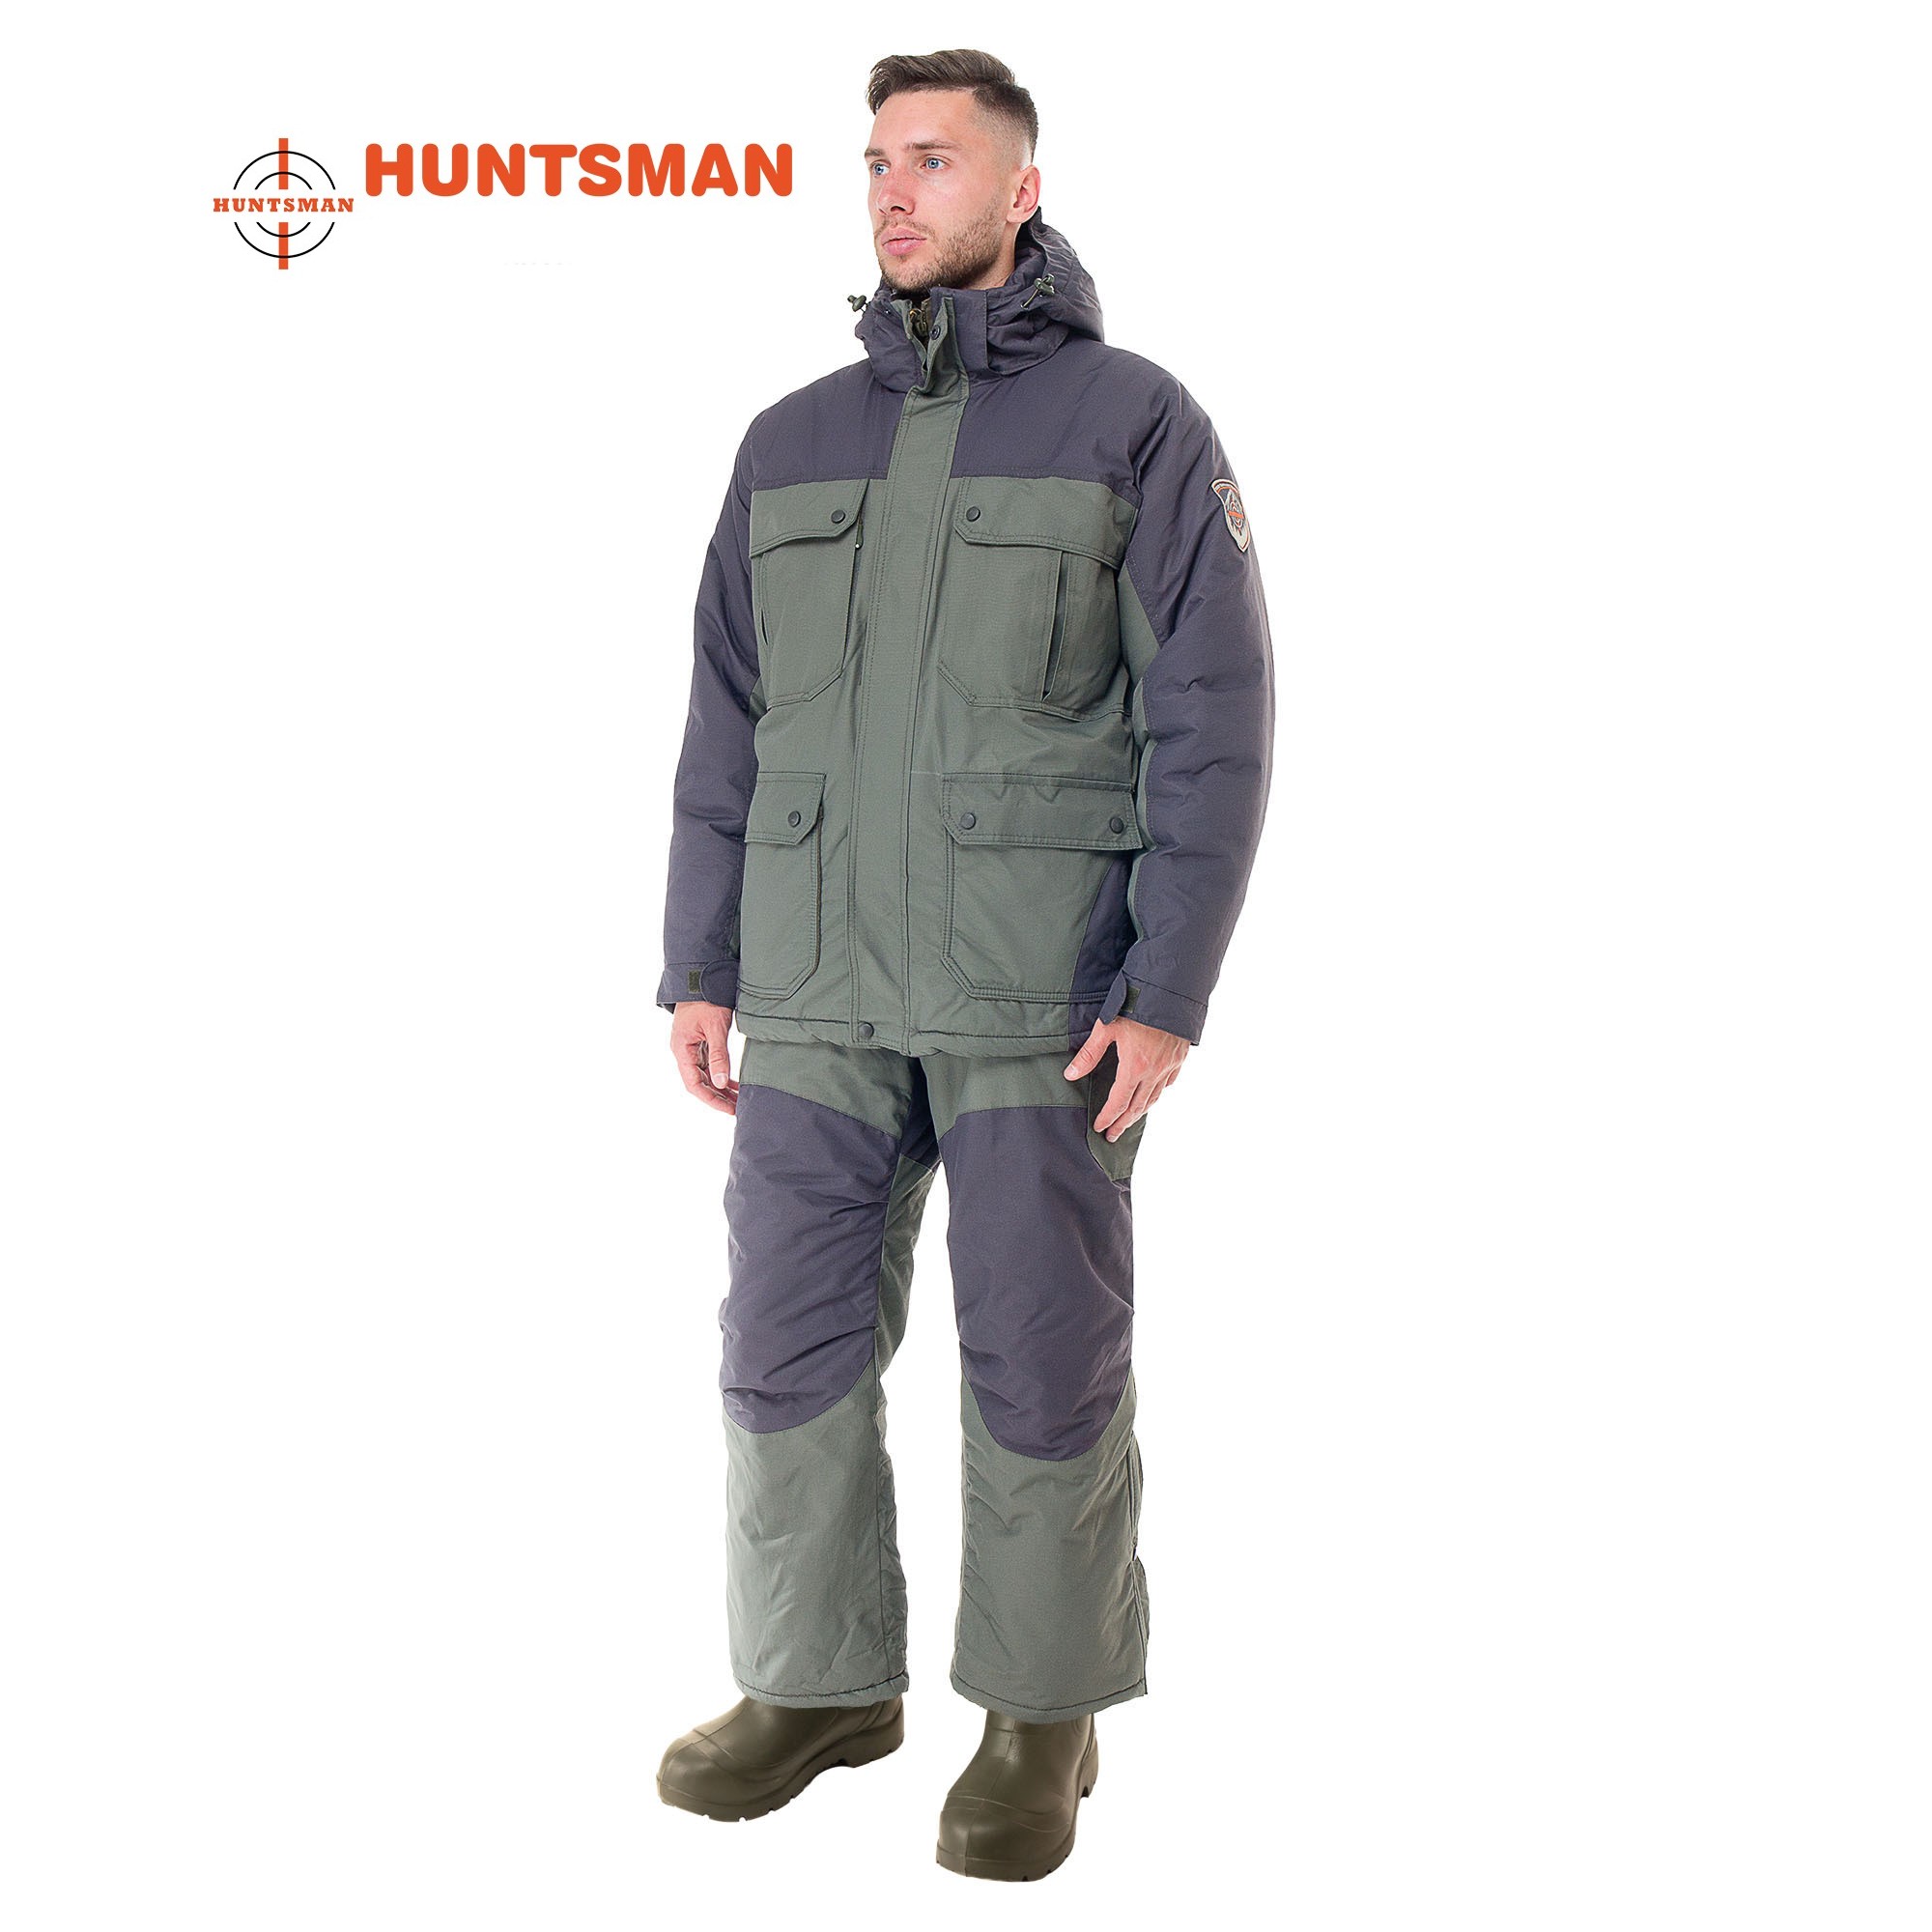 Žieminis kostiumas HUNTSMAN Kanada TK/OXLAND Haki/Grafito spalvos -35C